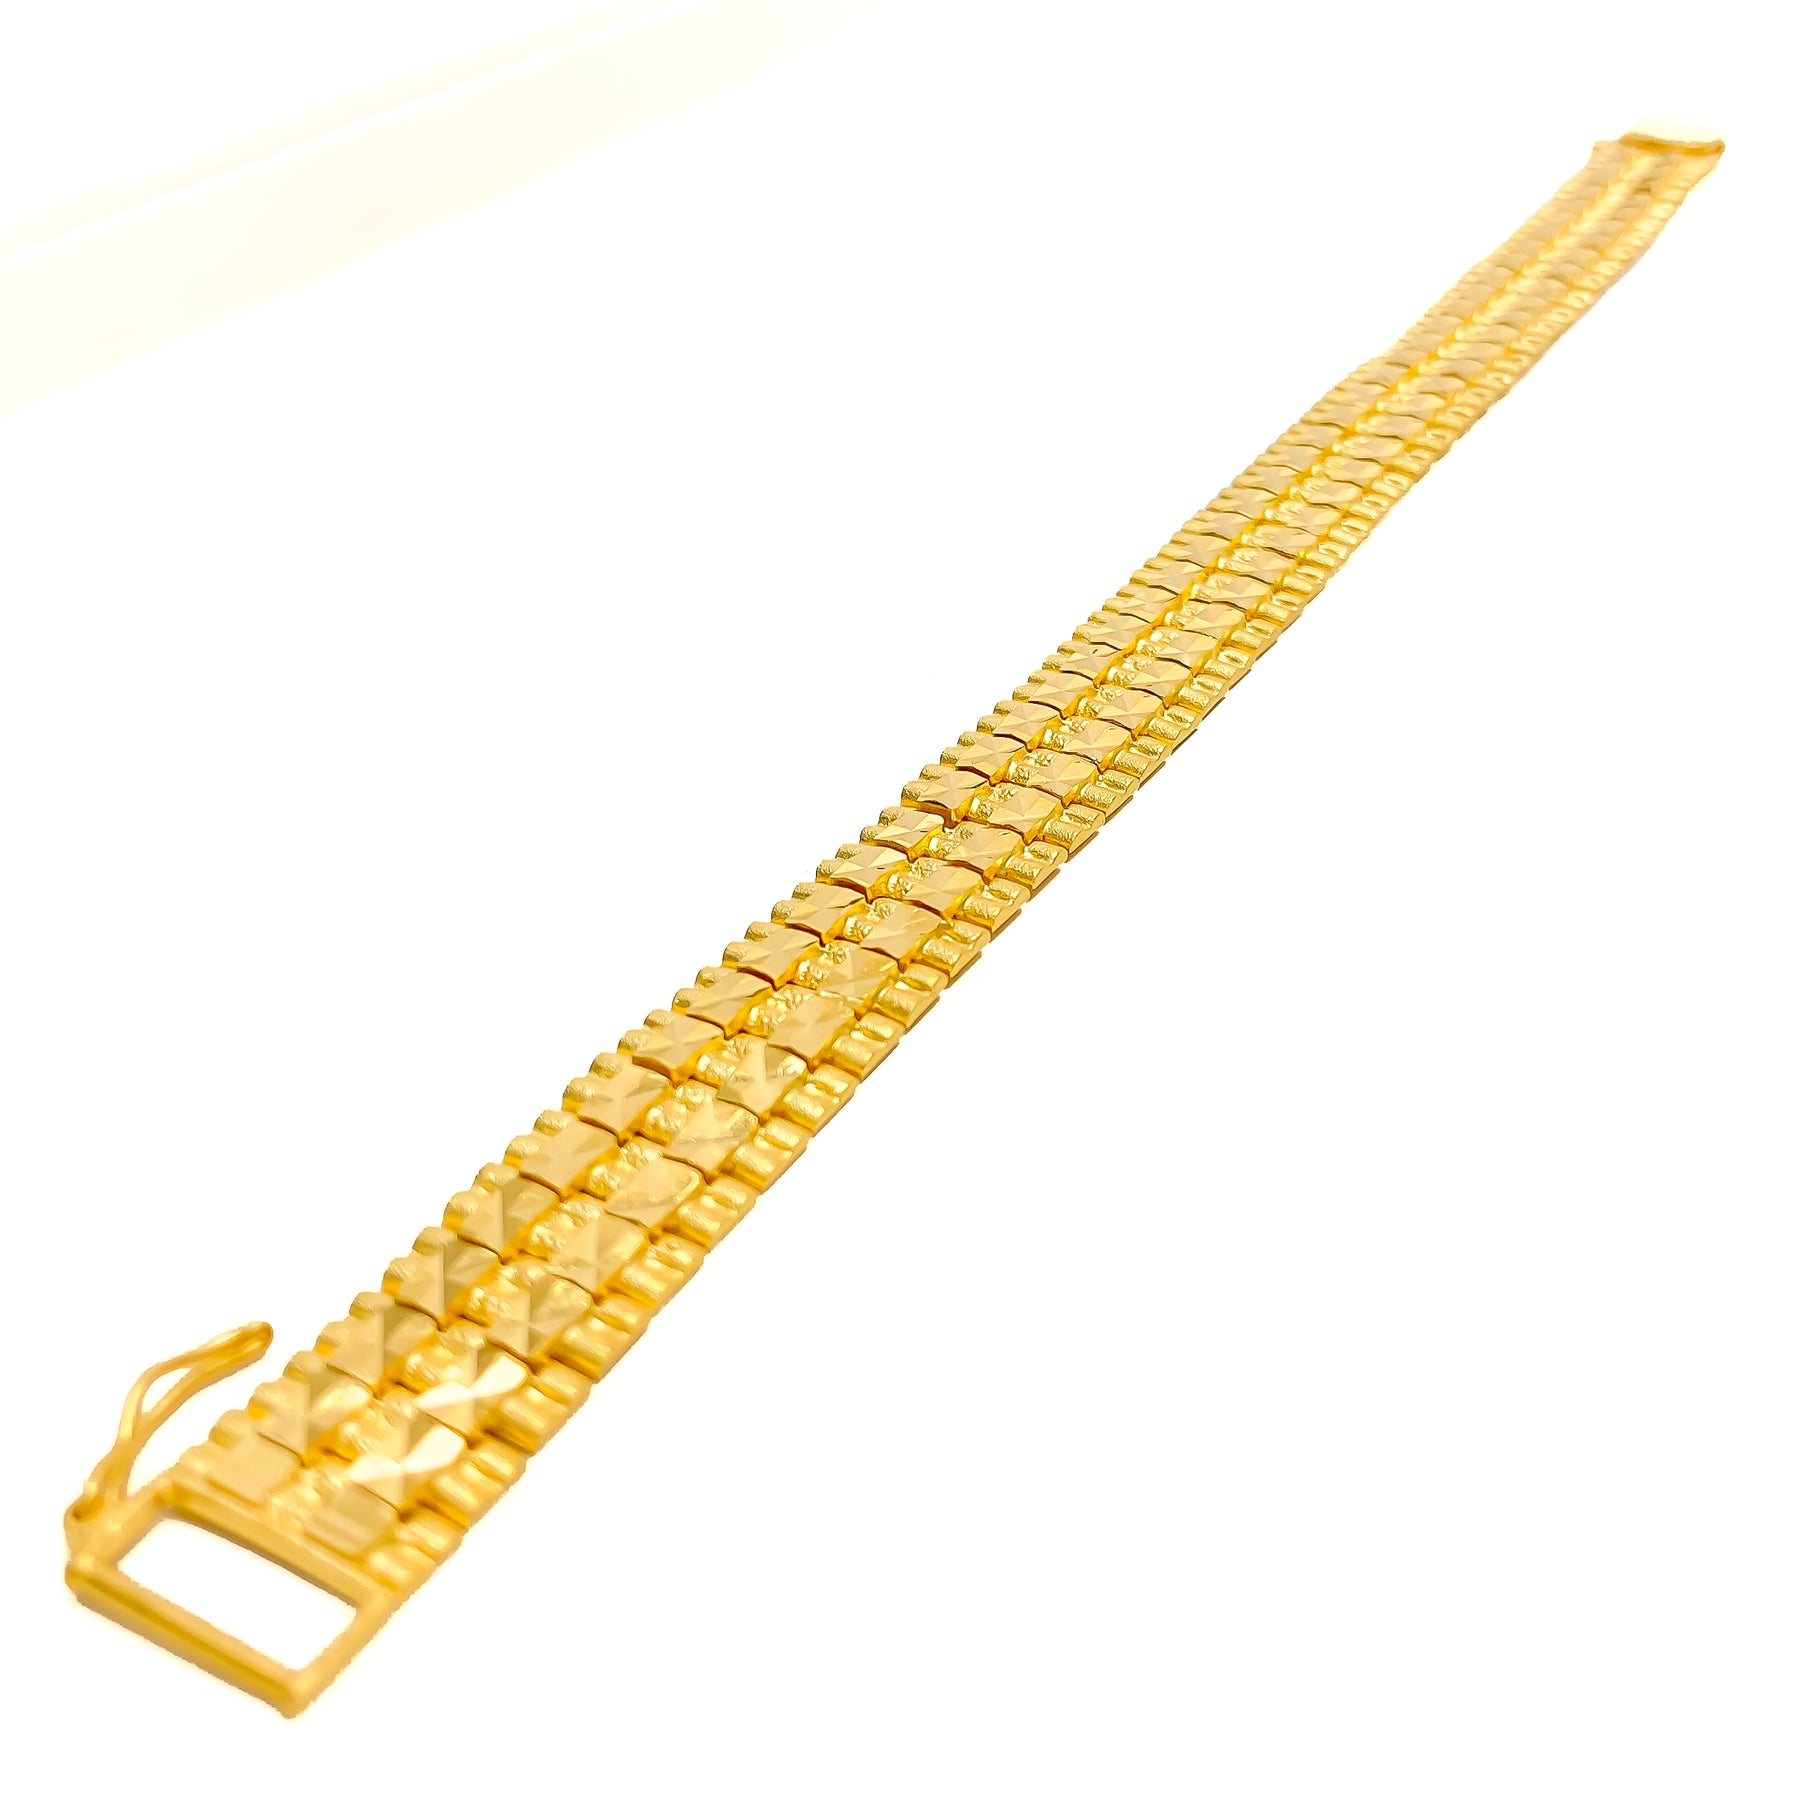 Gold Bracelets For Men | Jewellery Online | Kalyan Jewellery